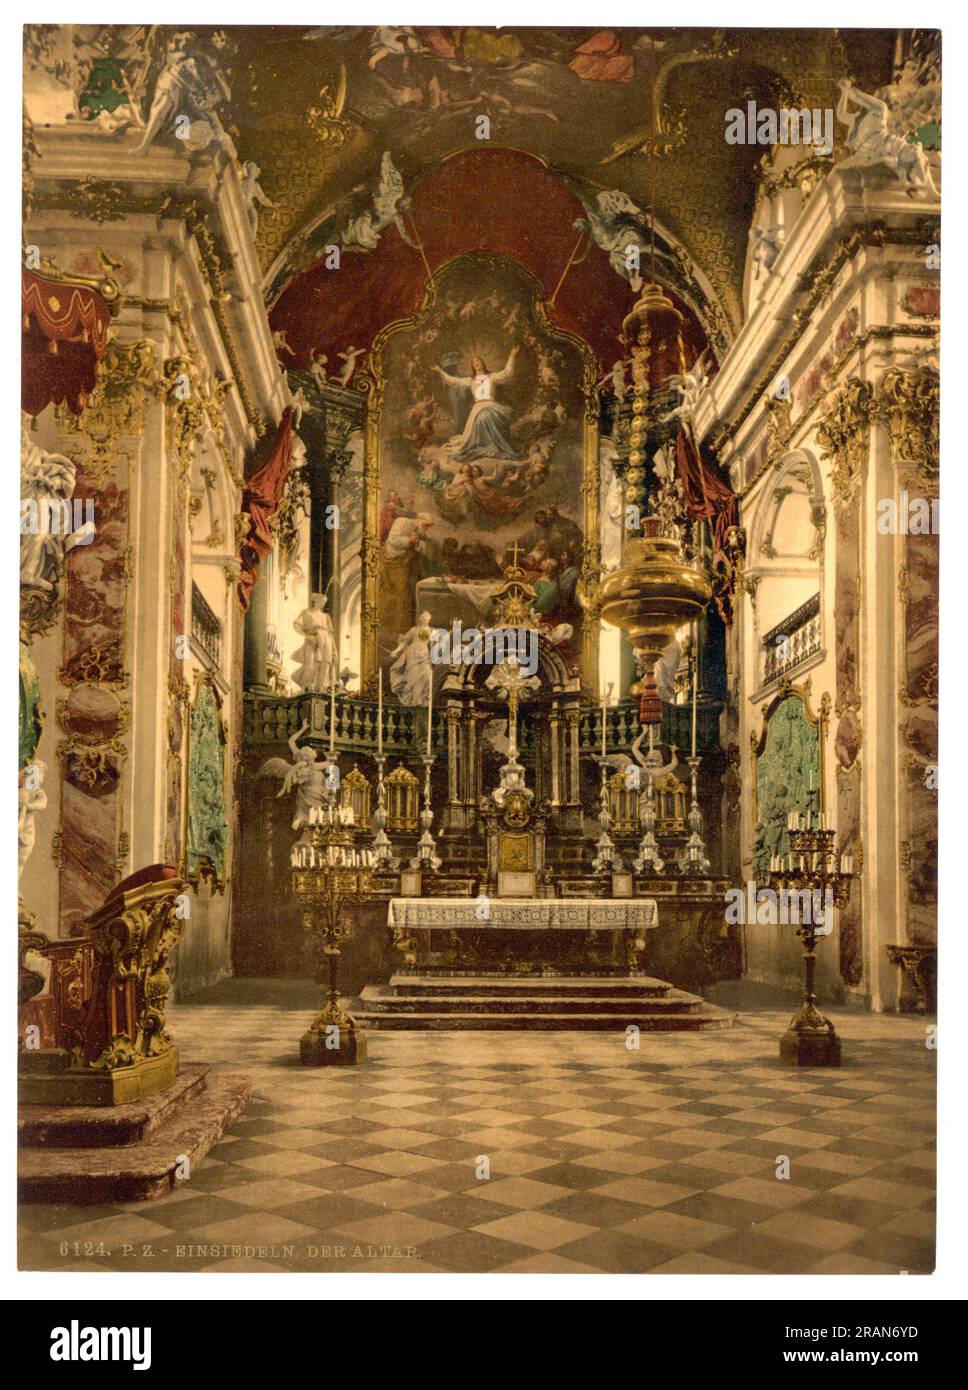 Einsiedeln Abbey, church altar, Einsiedeln, Schwyz, Switzerland 1890. Stock Photo